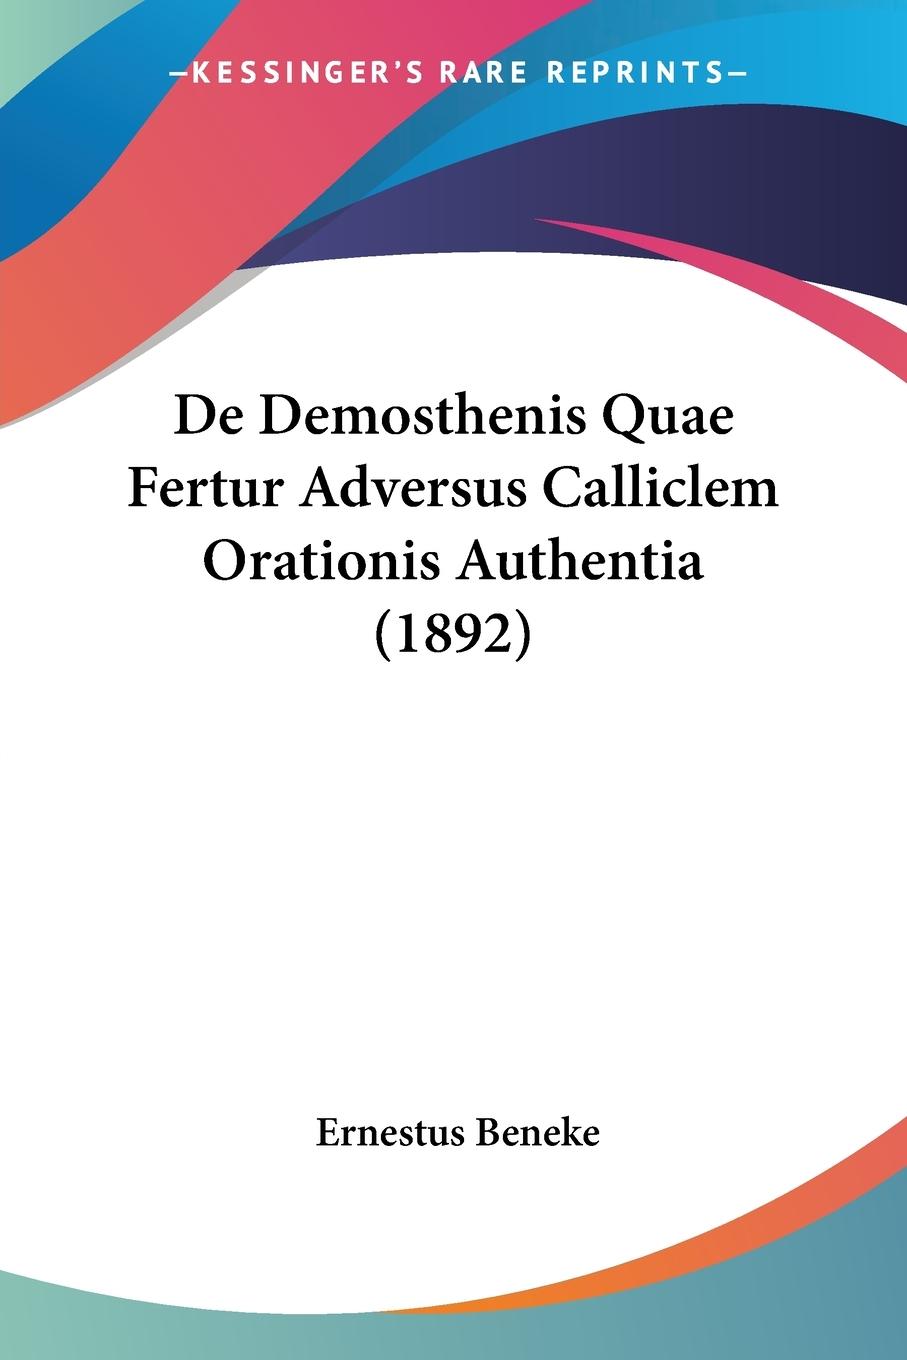 De Demosthenis Quae Fertur Adversus Calliclem Orationis Authentia (1892) - Beneke, Ernestus